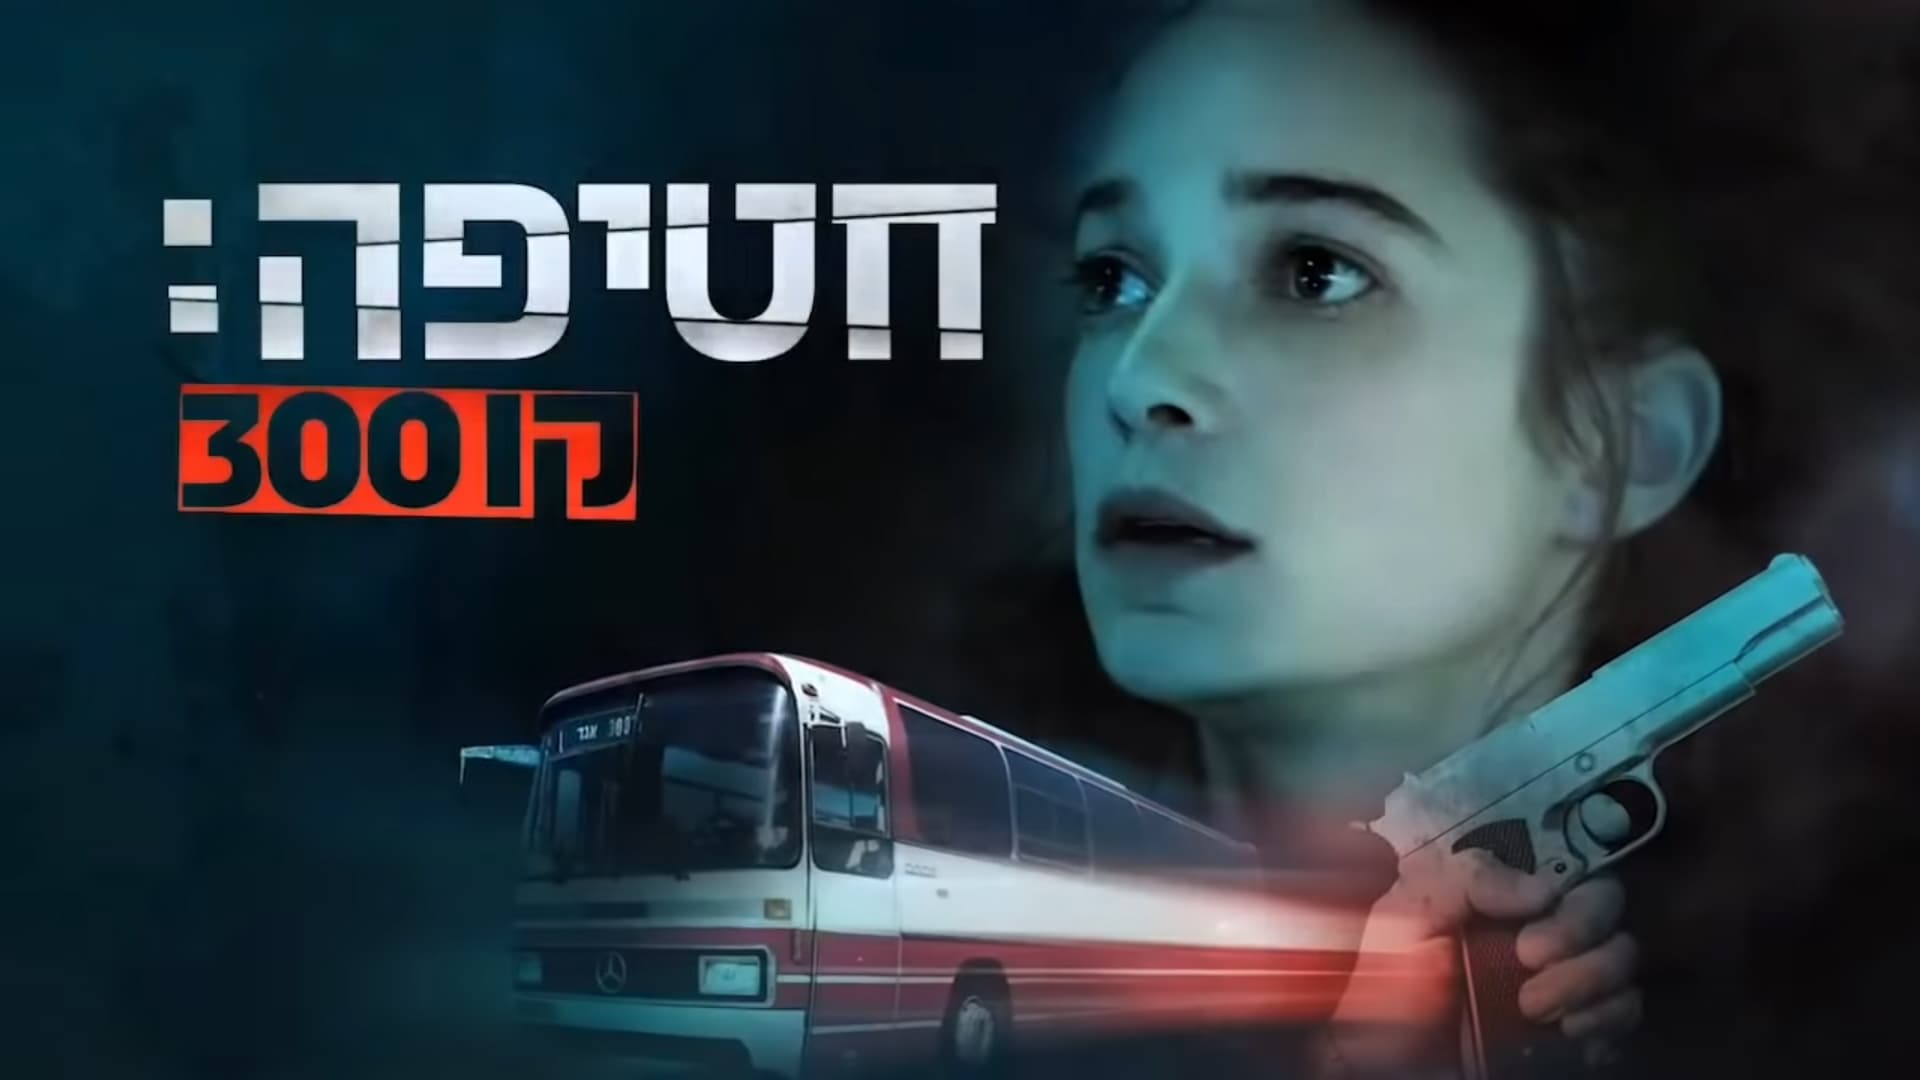 Rescue Bus 300 (2018)